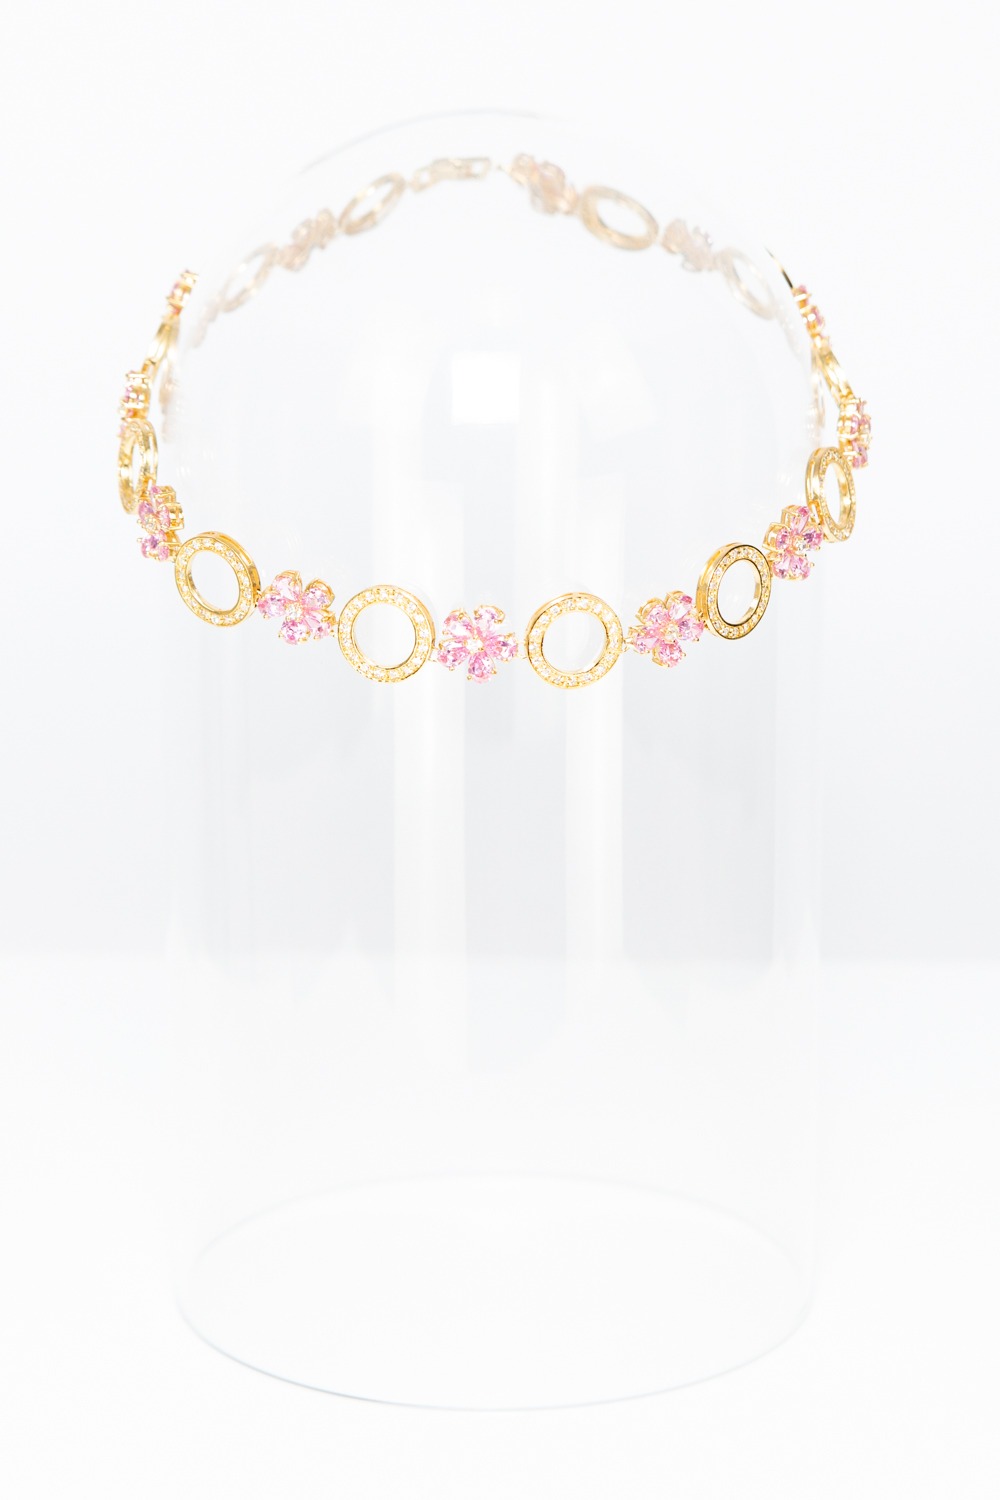 Halskette in Gold mit rosa Blüten-Details